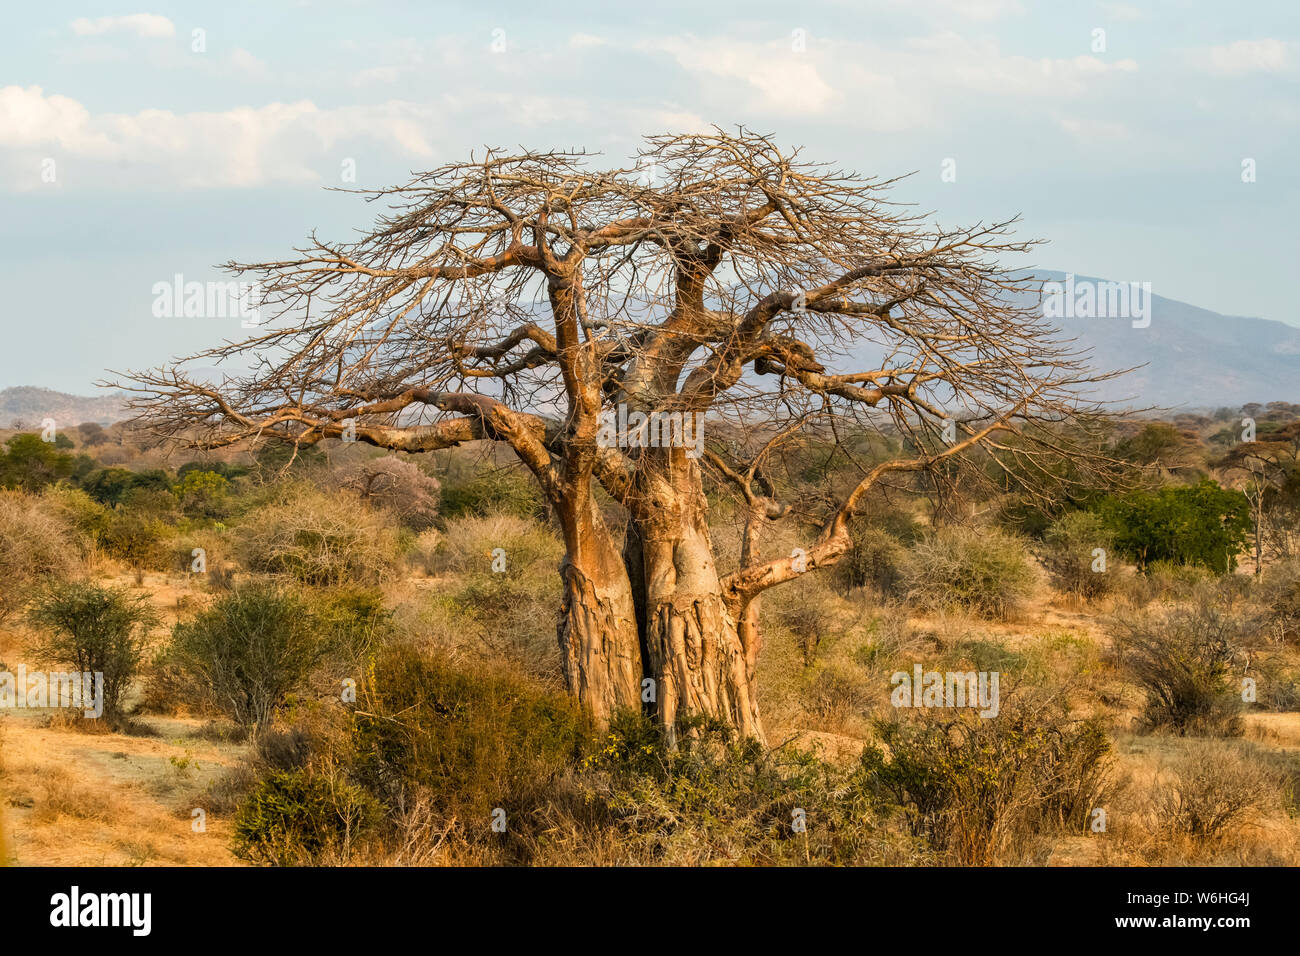 Deshojado árbol baobab (Adansonia digitata) con tronco marcado por los elefantes en el Parque nacional Ruaha; Tanzania Foto de stock